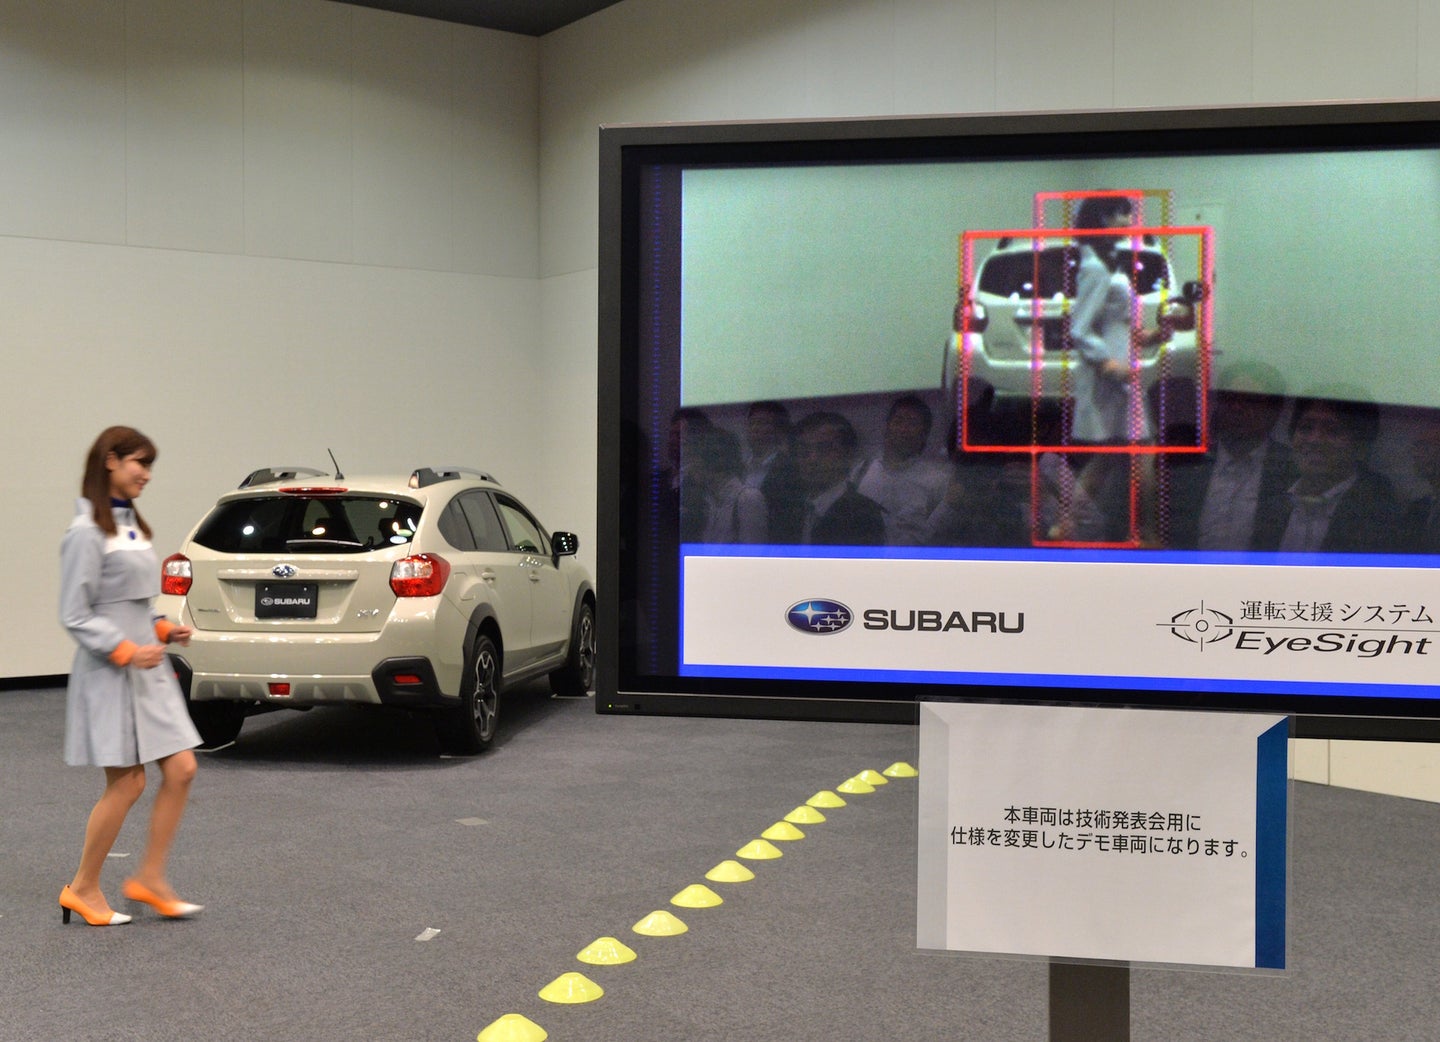 Subaru Obtains Permit to Test Autonomous Cars in California